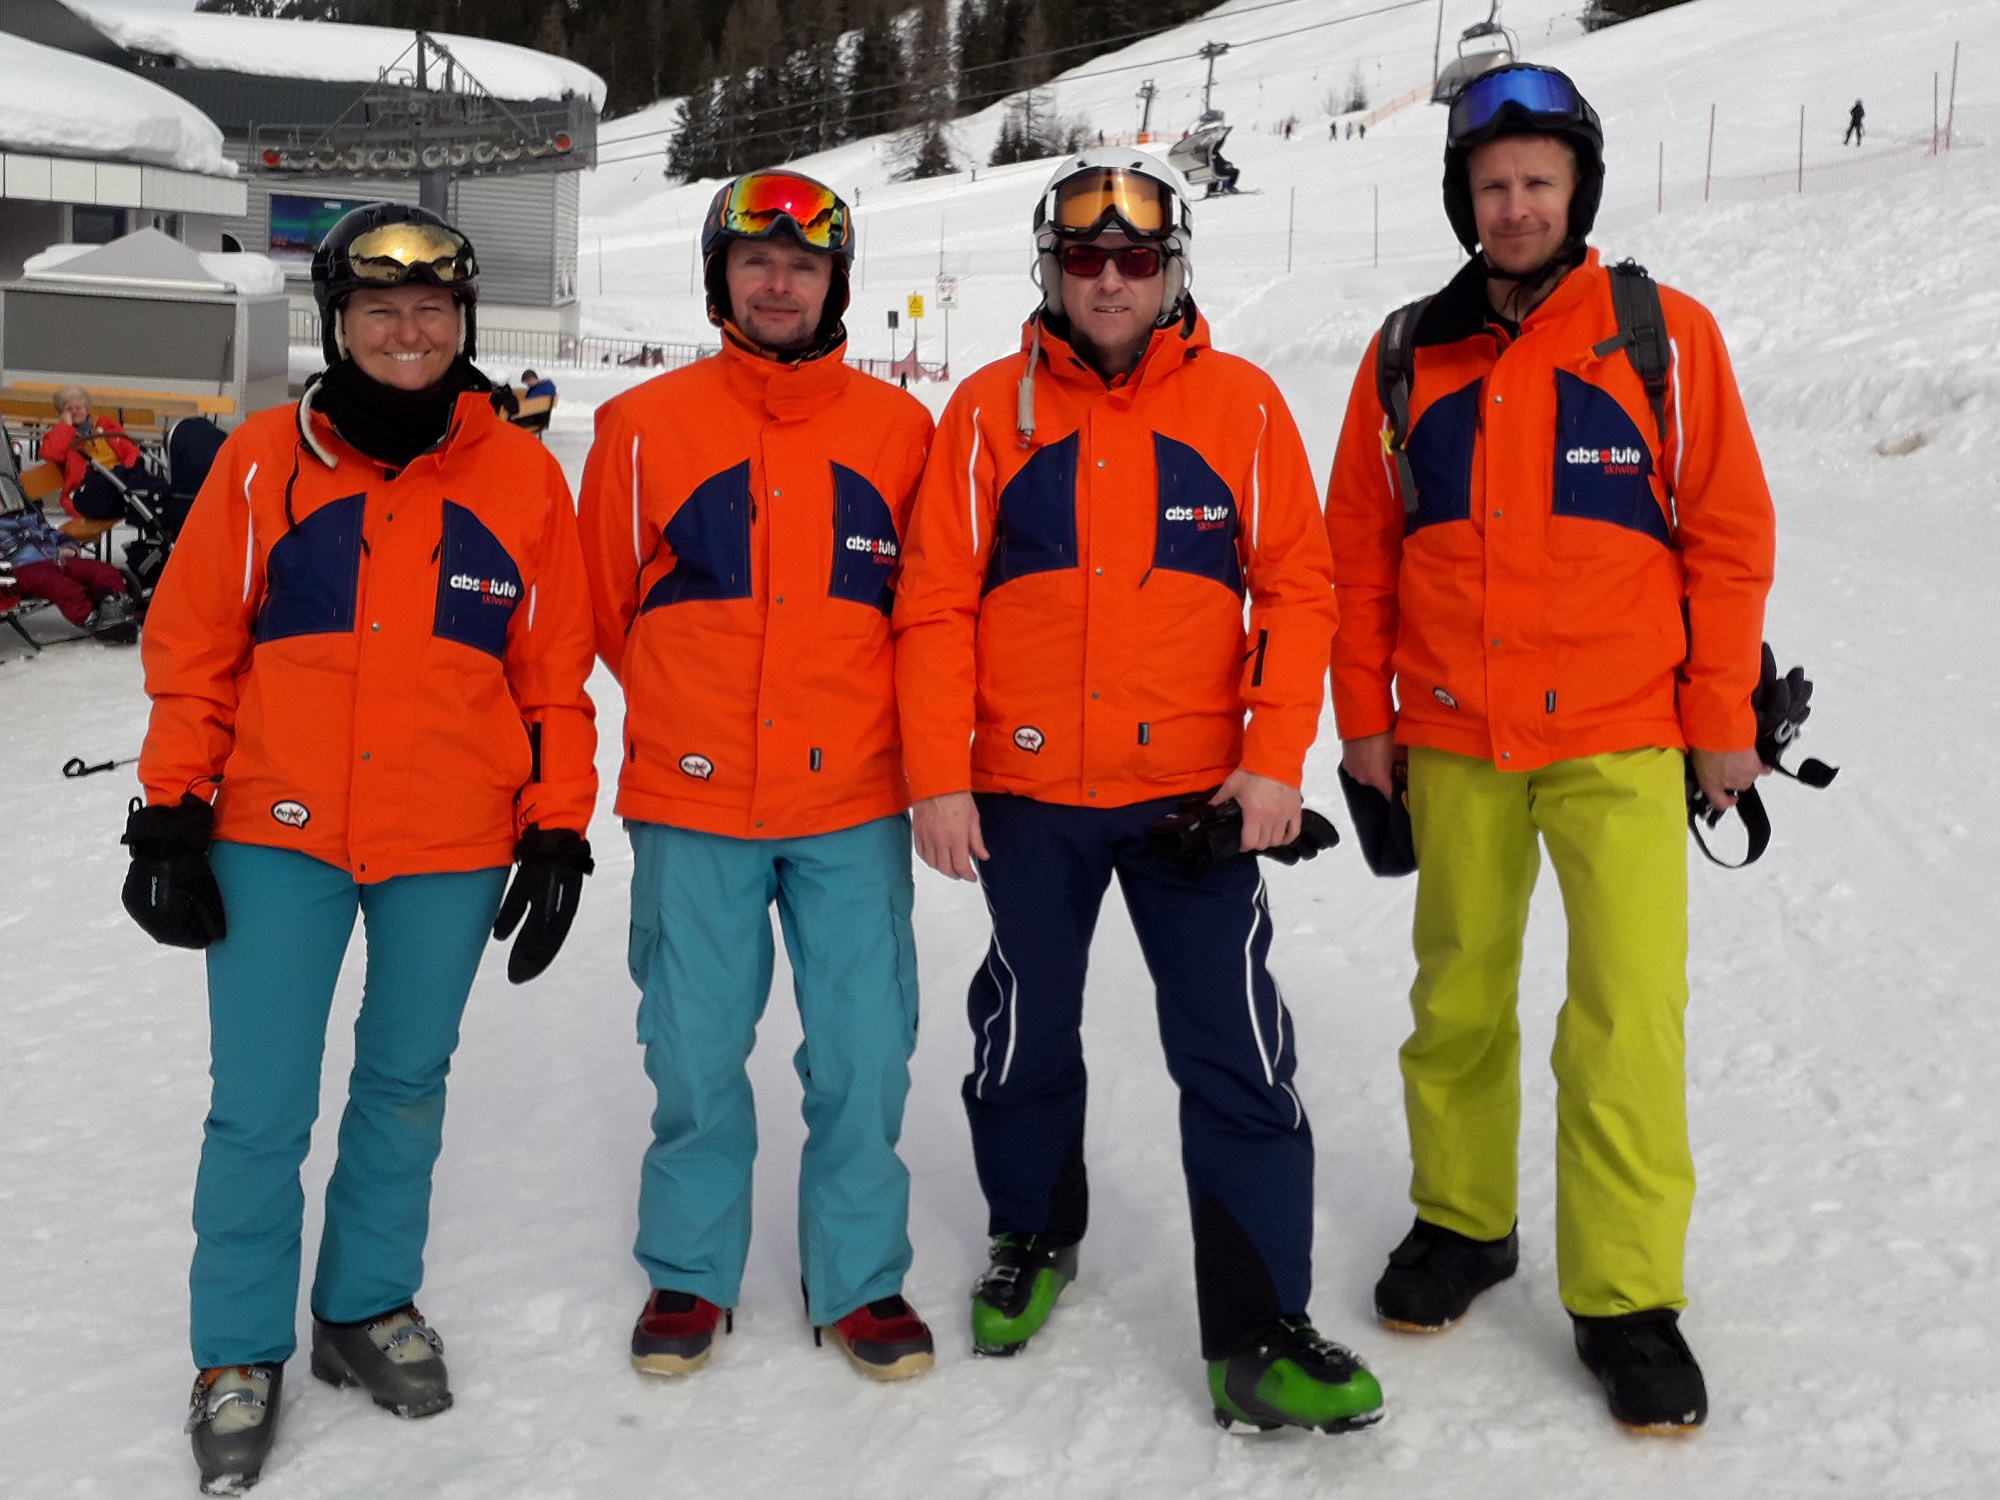 Ski-rep-team.jpg